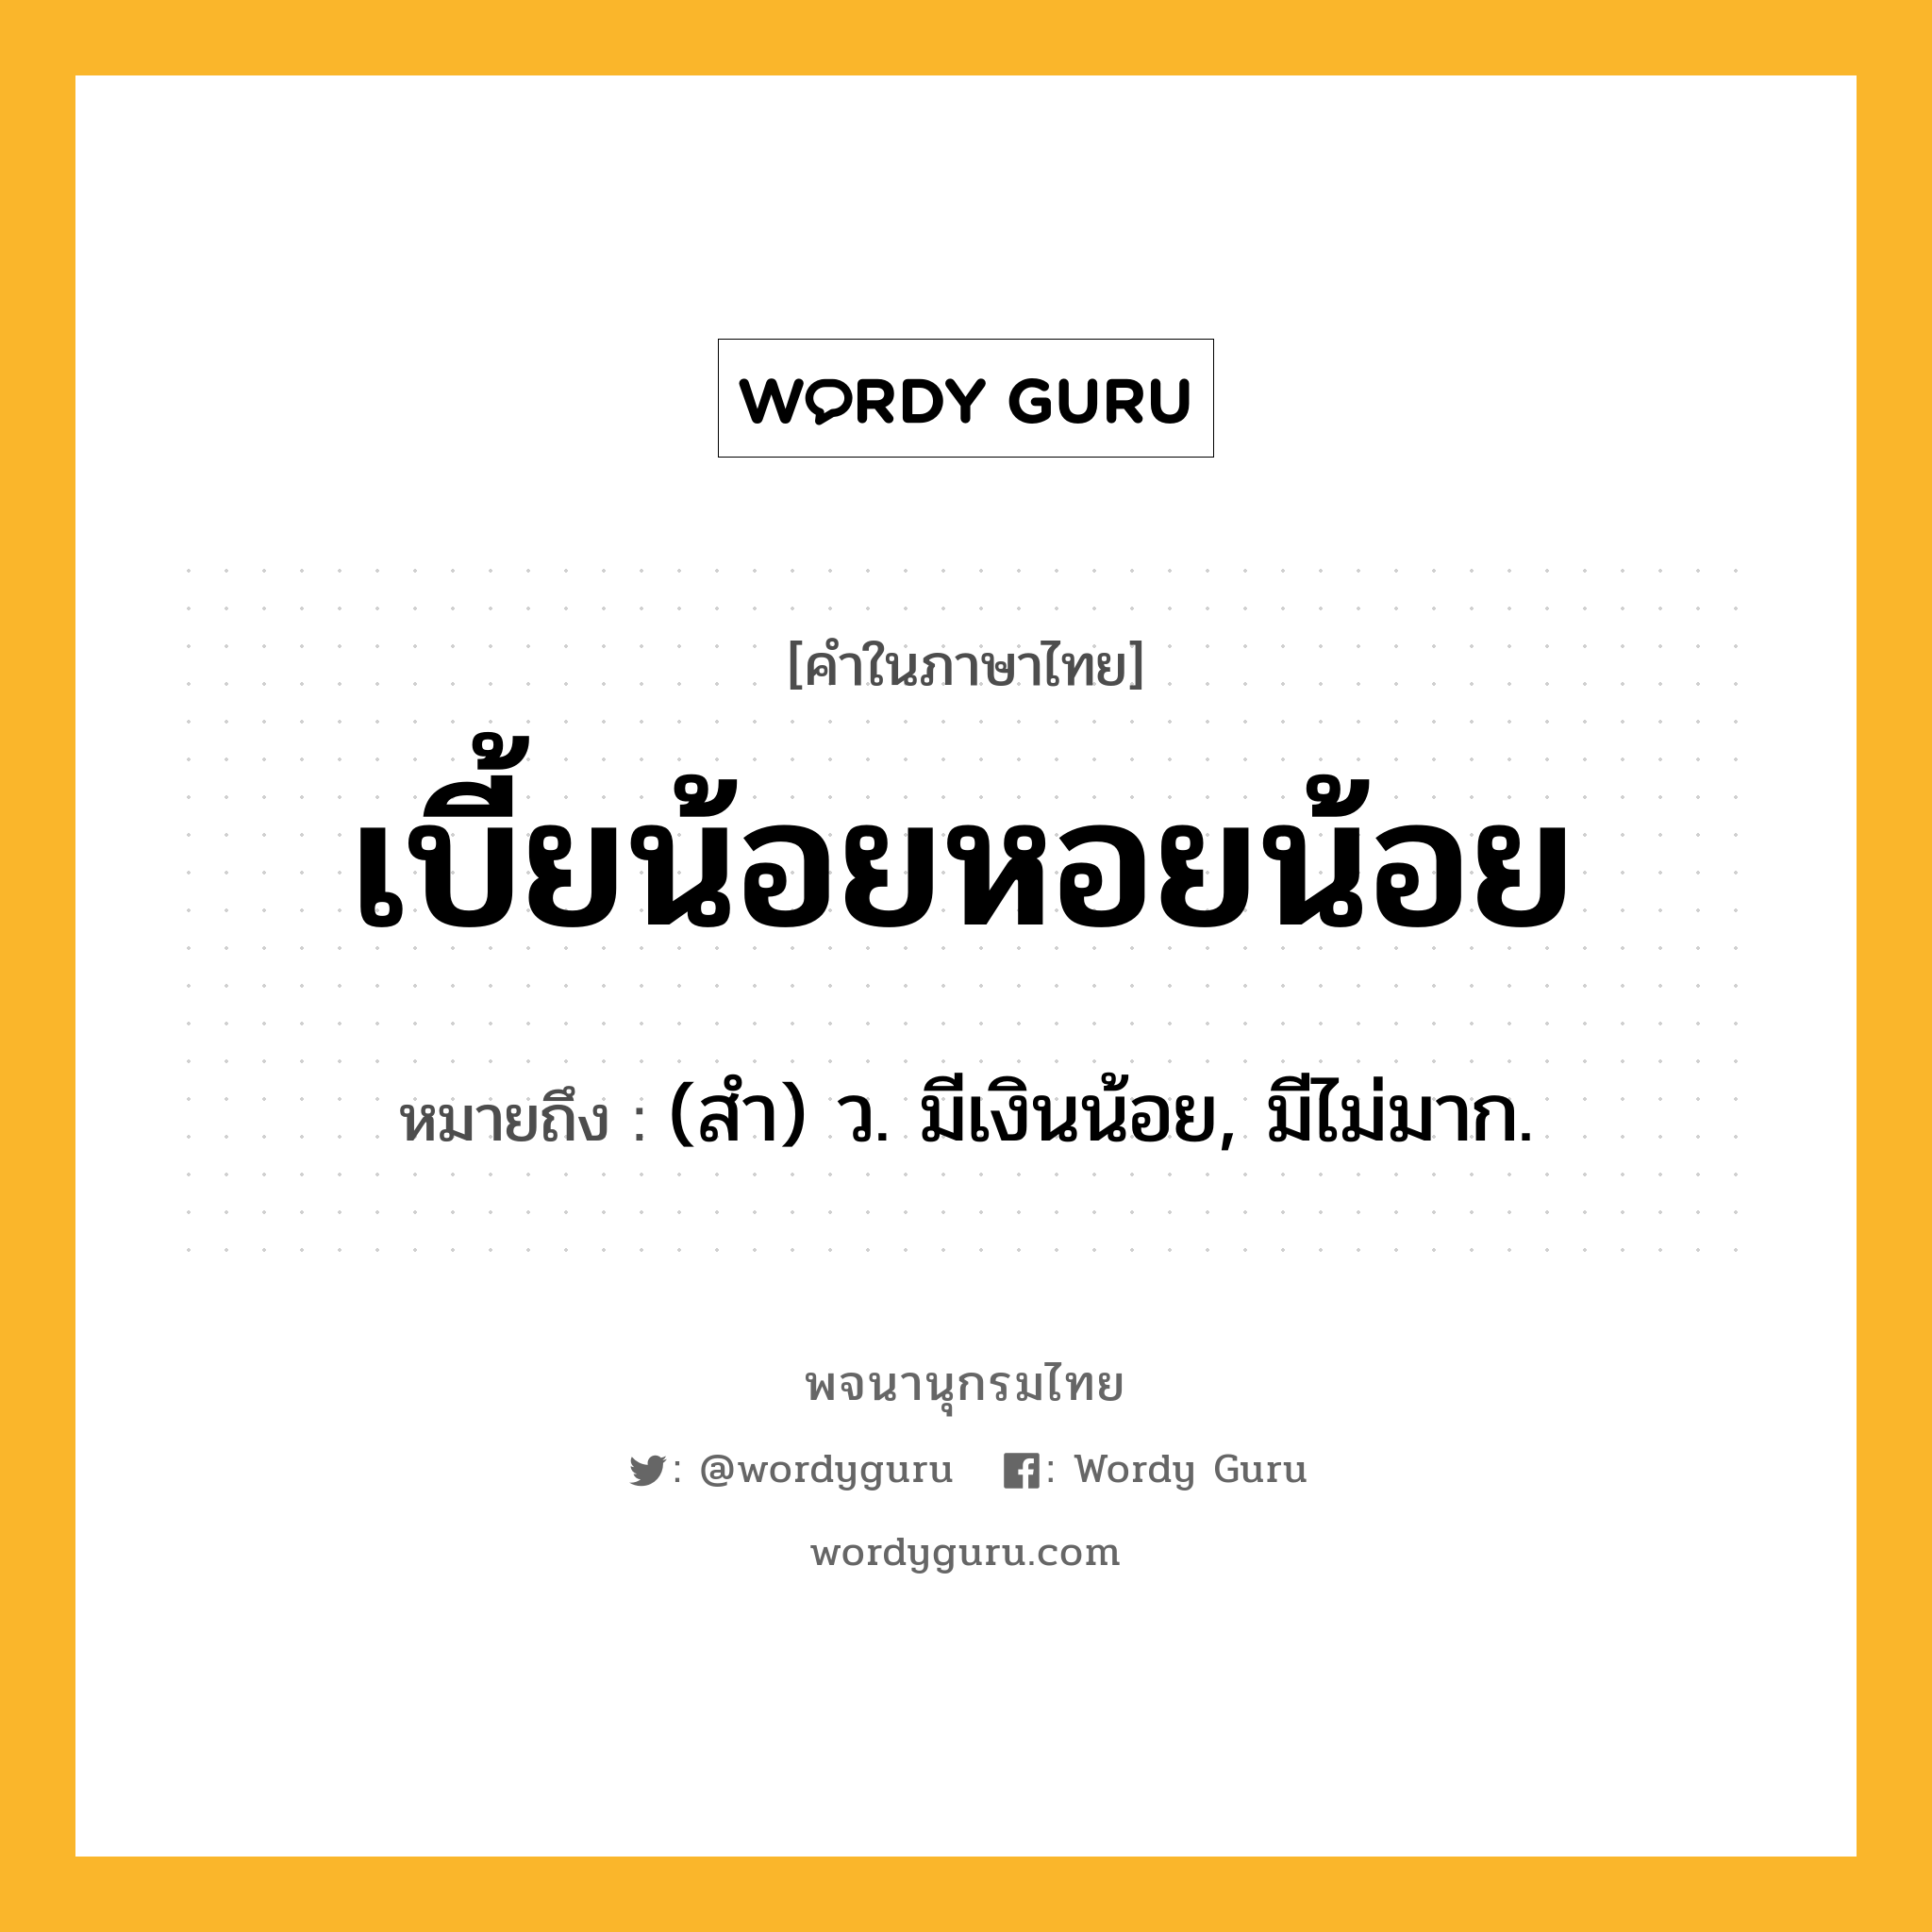 เบี้ยน้อยหอยน้อย หมายถึงอะไร?, คำในภาษาไทย เบี้ยน้อยหอยน้อย หมายถึง (สํา) ว. มีเงินน้อย, มีไม่มาก.